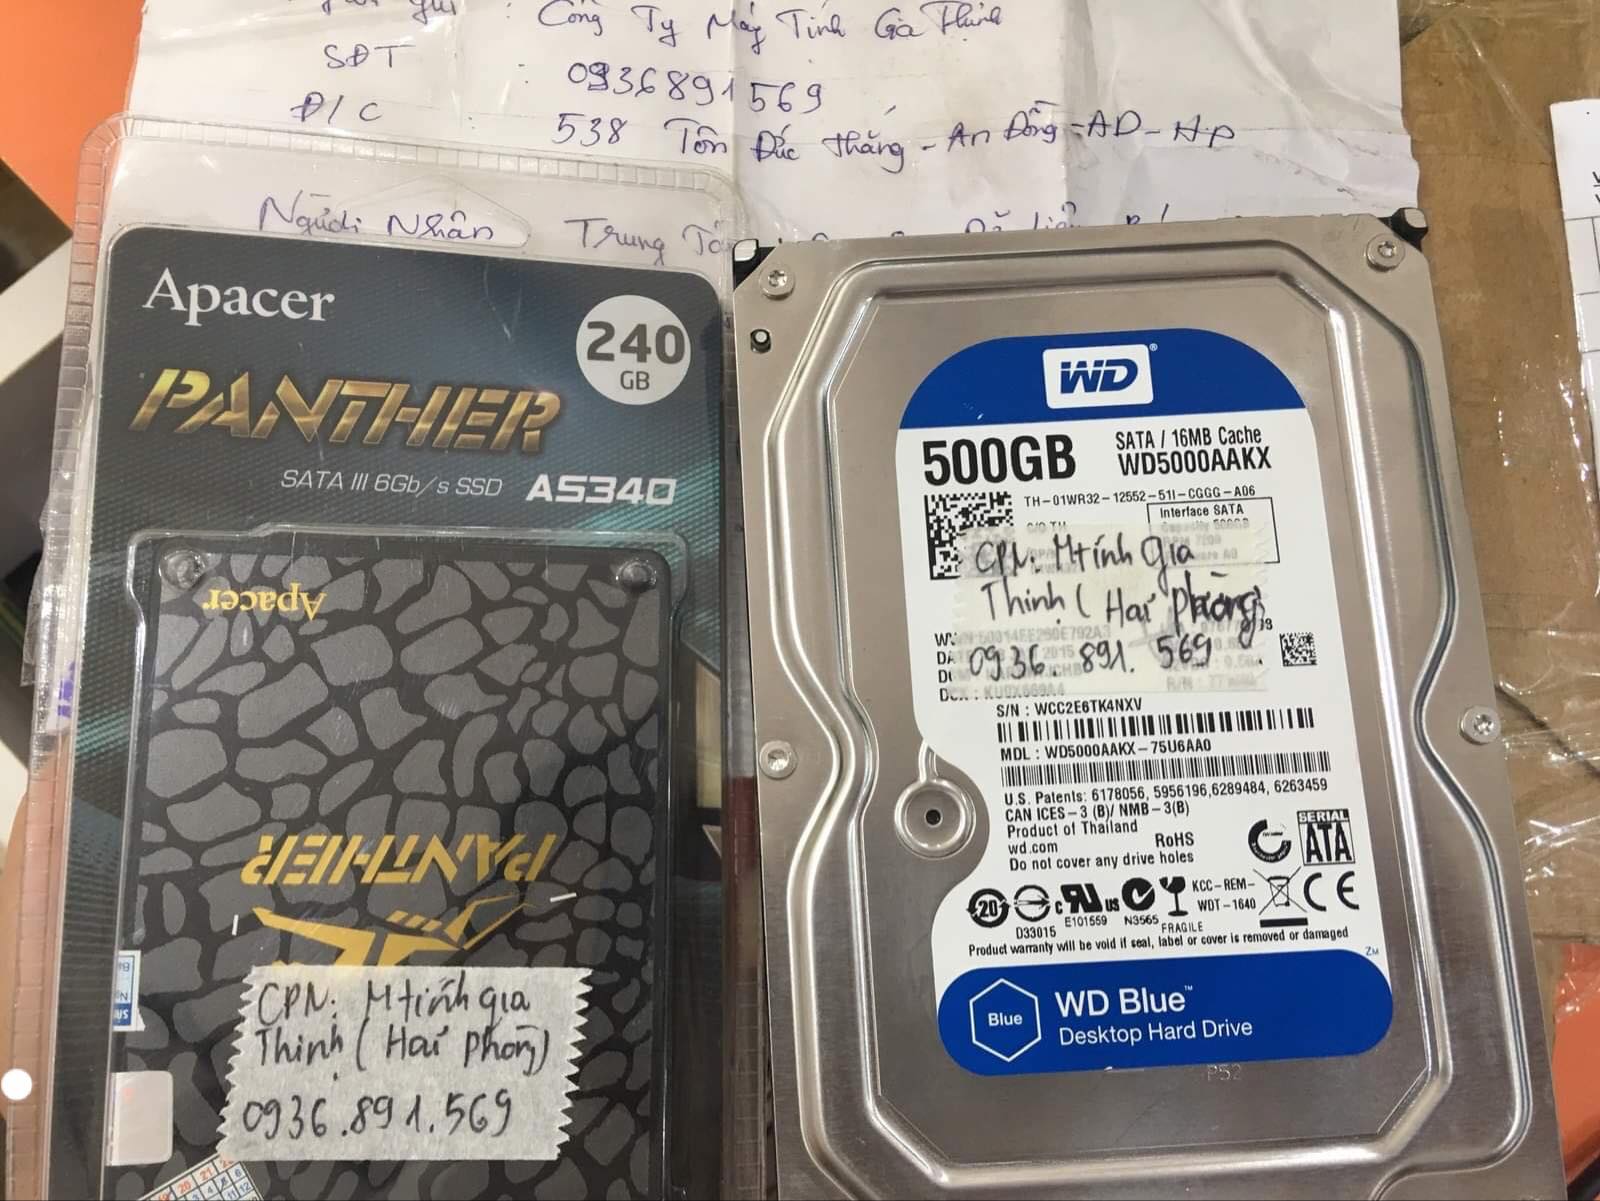 Khôi phục dữ liệu ổ cứng Western 500GB lỗi đầu đọc tại Hải Phòng 26/09/2019 - cuumaytinh